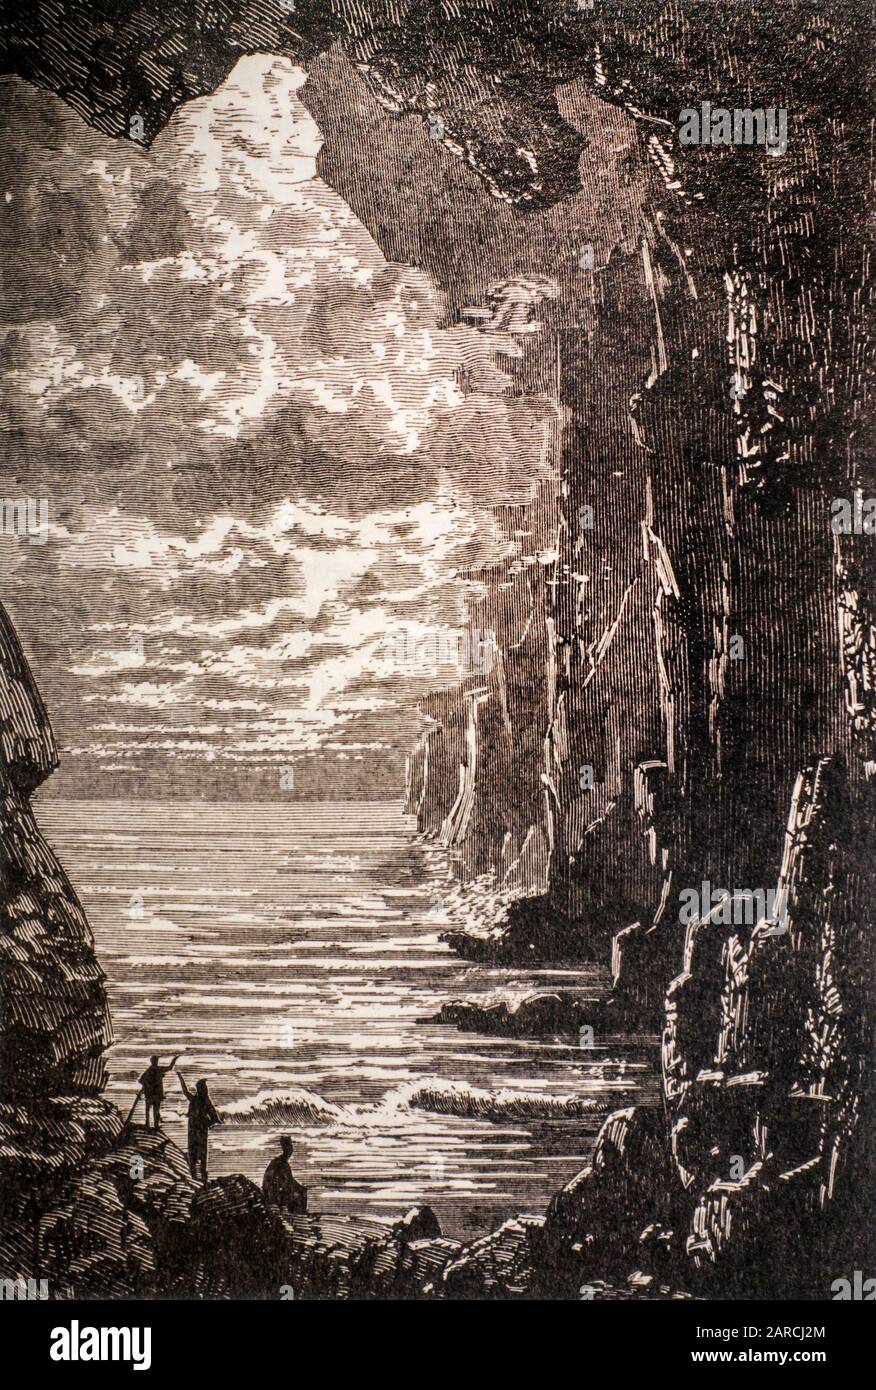 1864 livre illustration La mer Centrale du roman de science-fiction Voyage au Centre de la Terre par l'écrivain / romancier français Jules Verne Banque D'Images